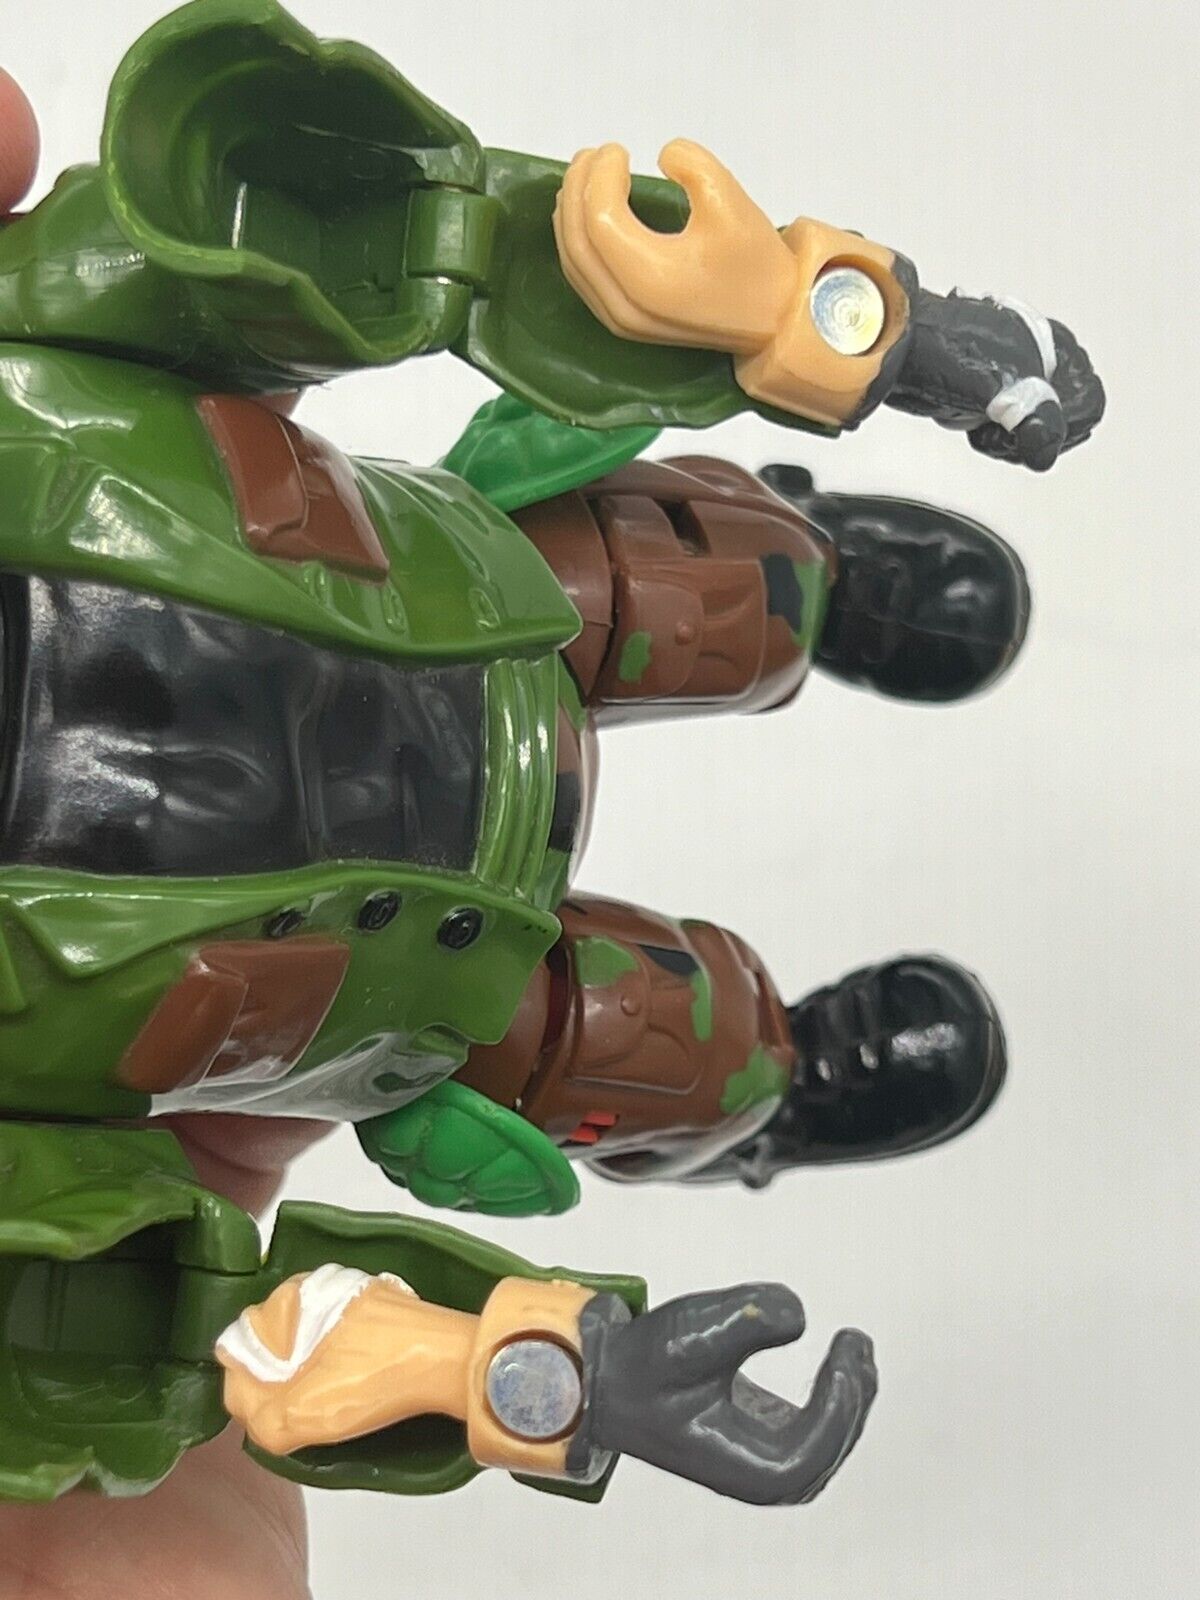 1992 TMNT Ninja Turtles Mutations Figure Rocksteady Vintage Playmates